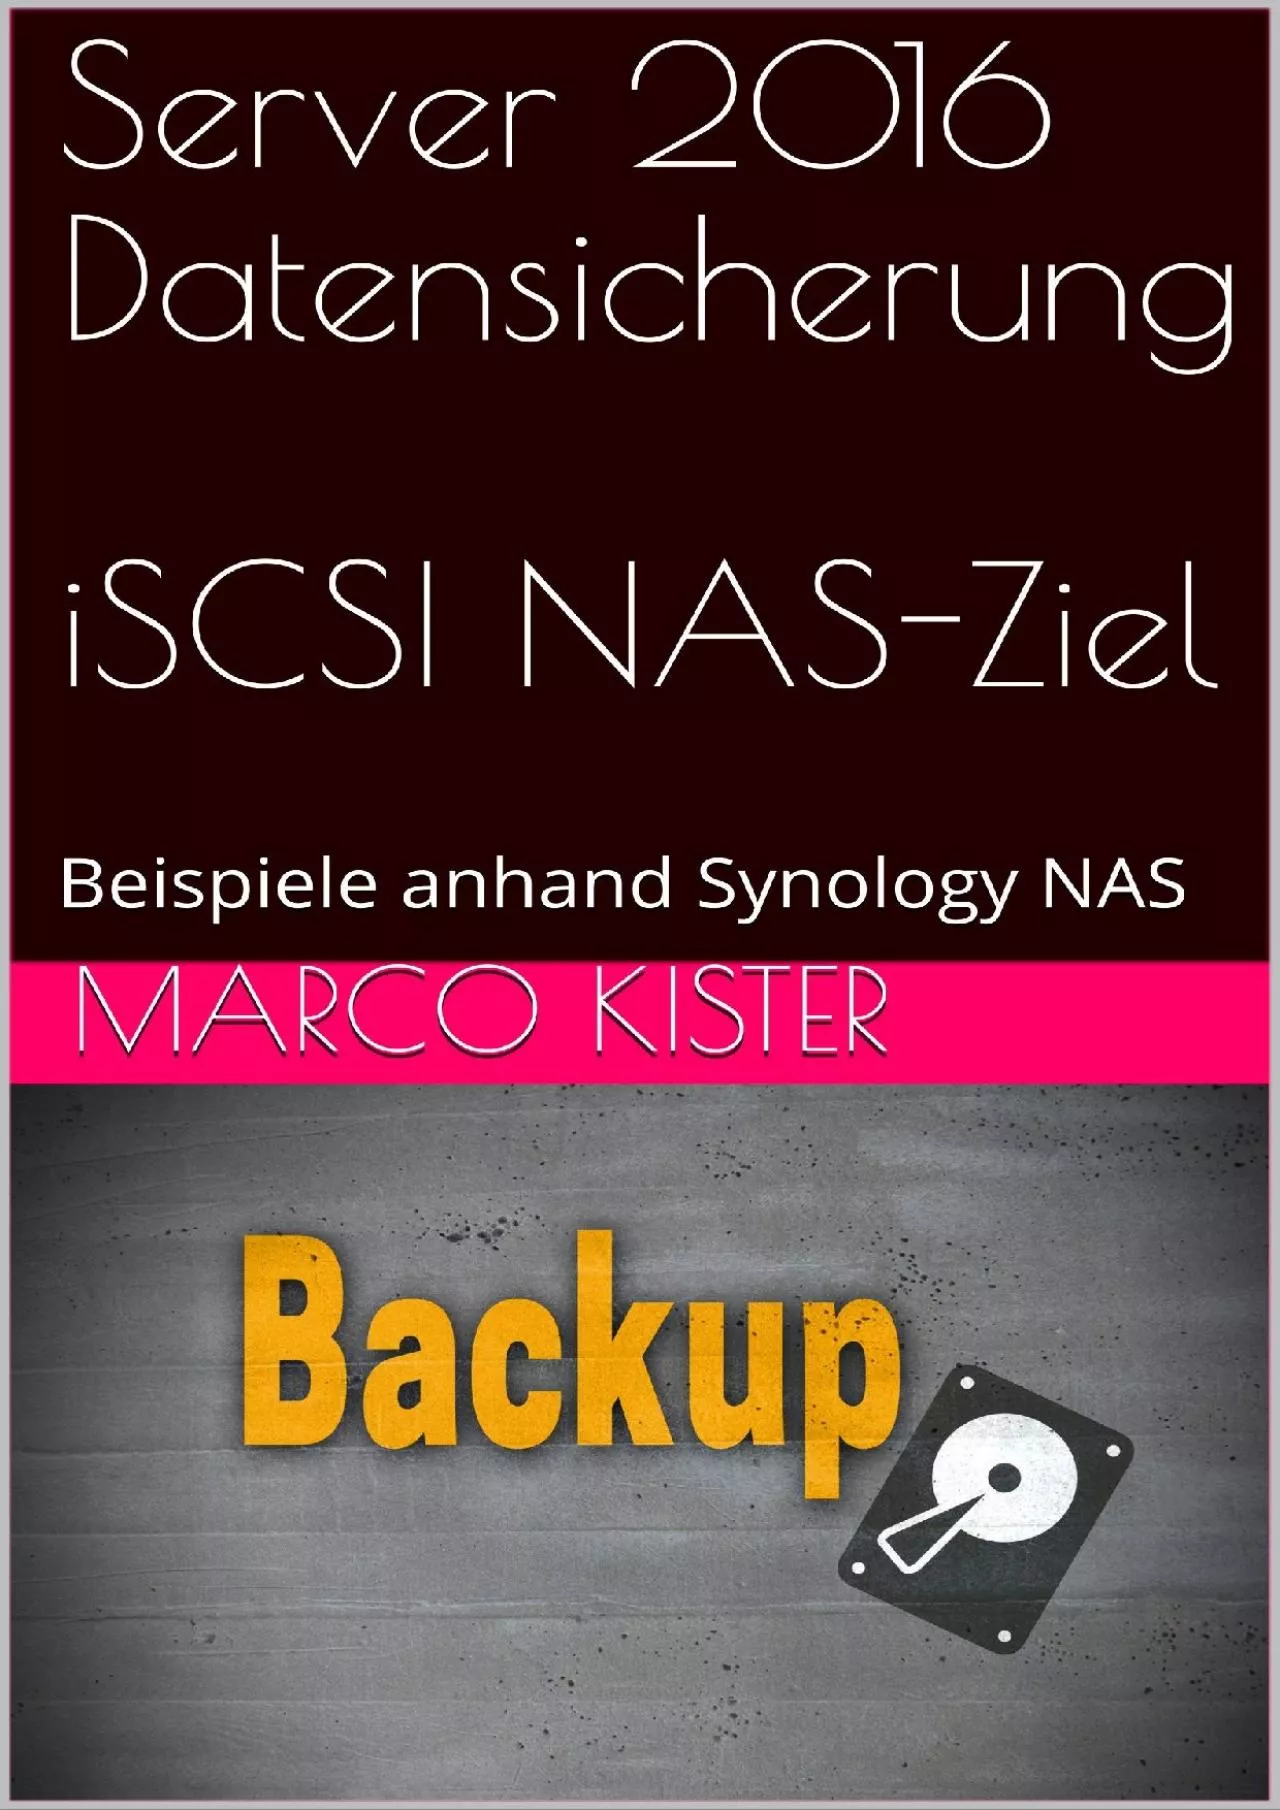 Server 206 Datensicherung iSCSI NAS-Ziel Beispiele anhand Synology NAS German Edition